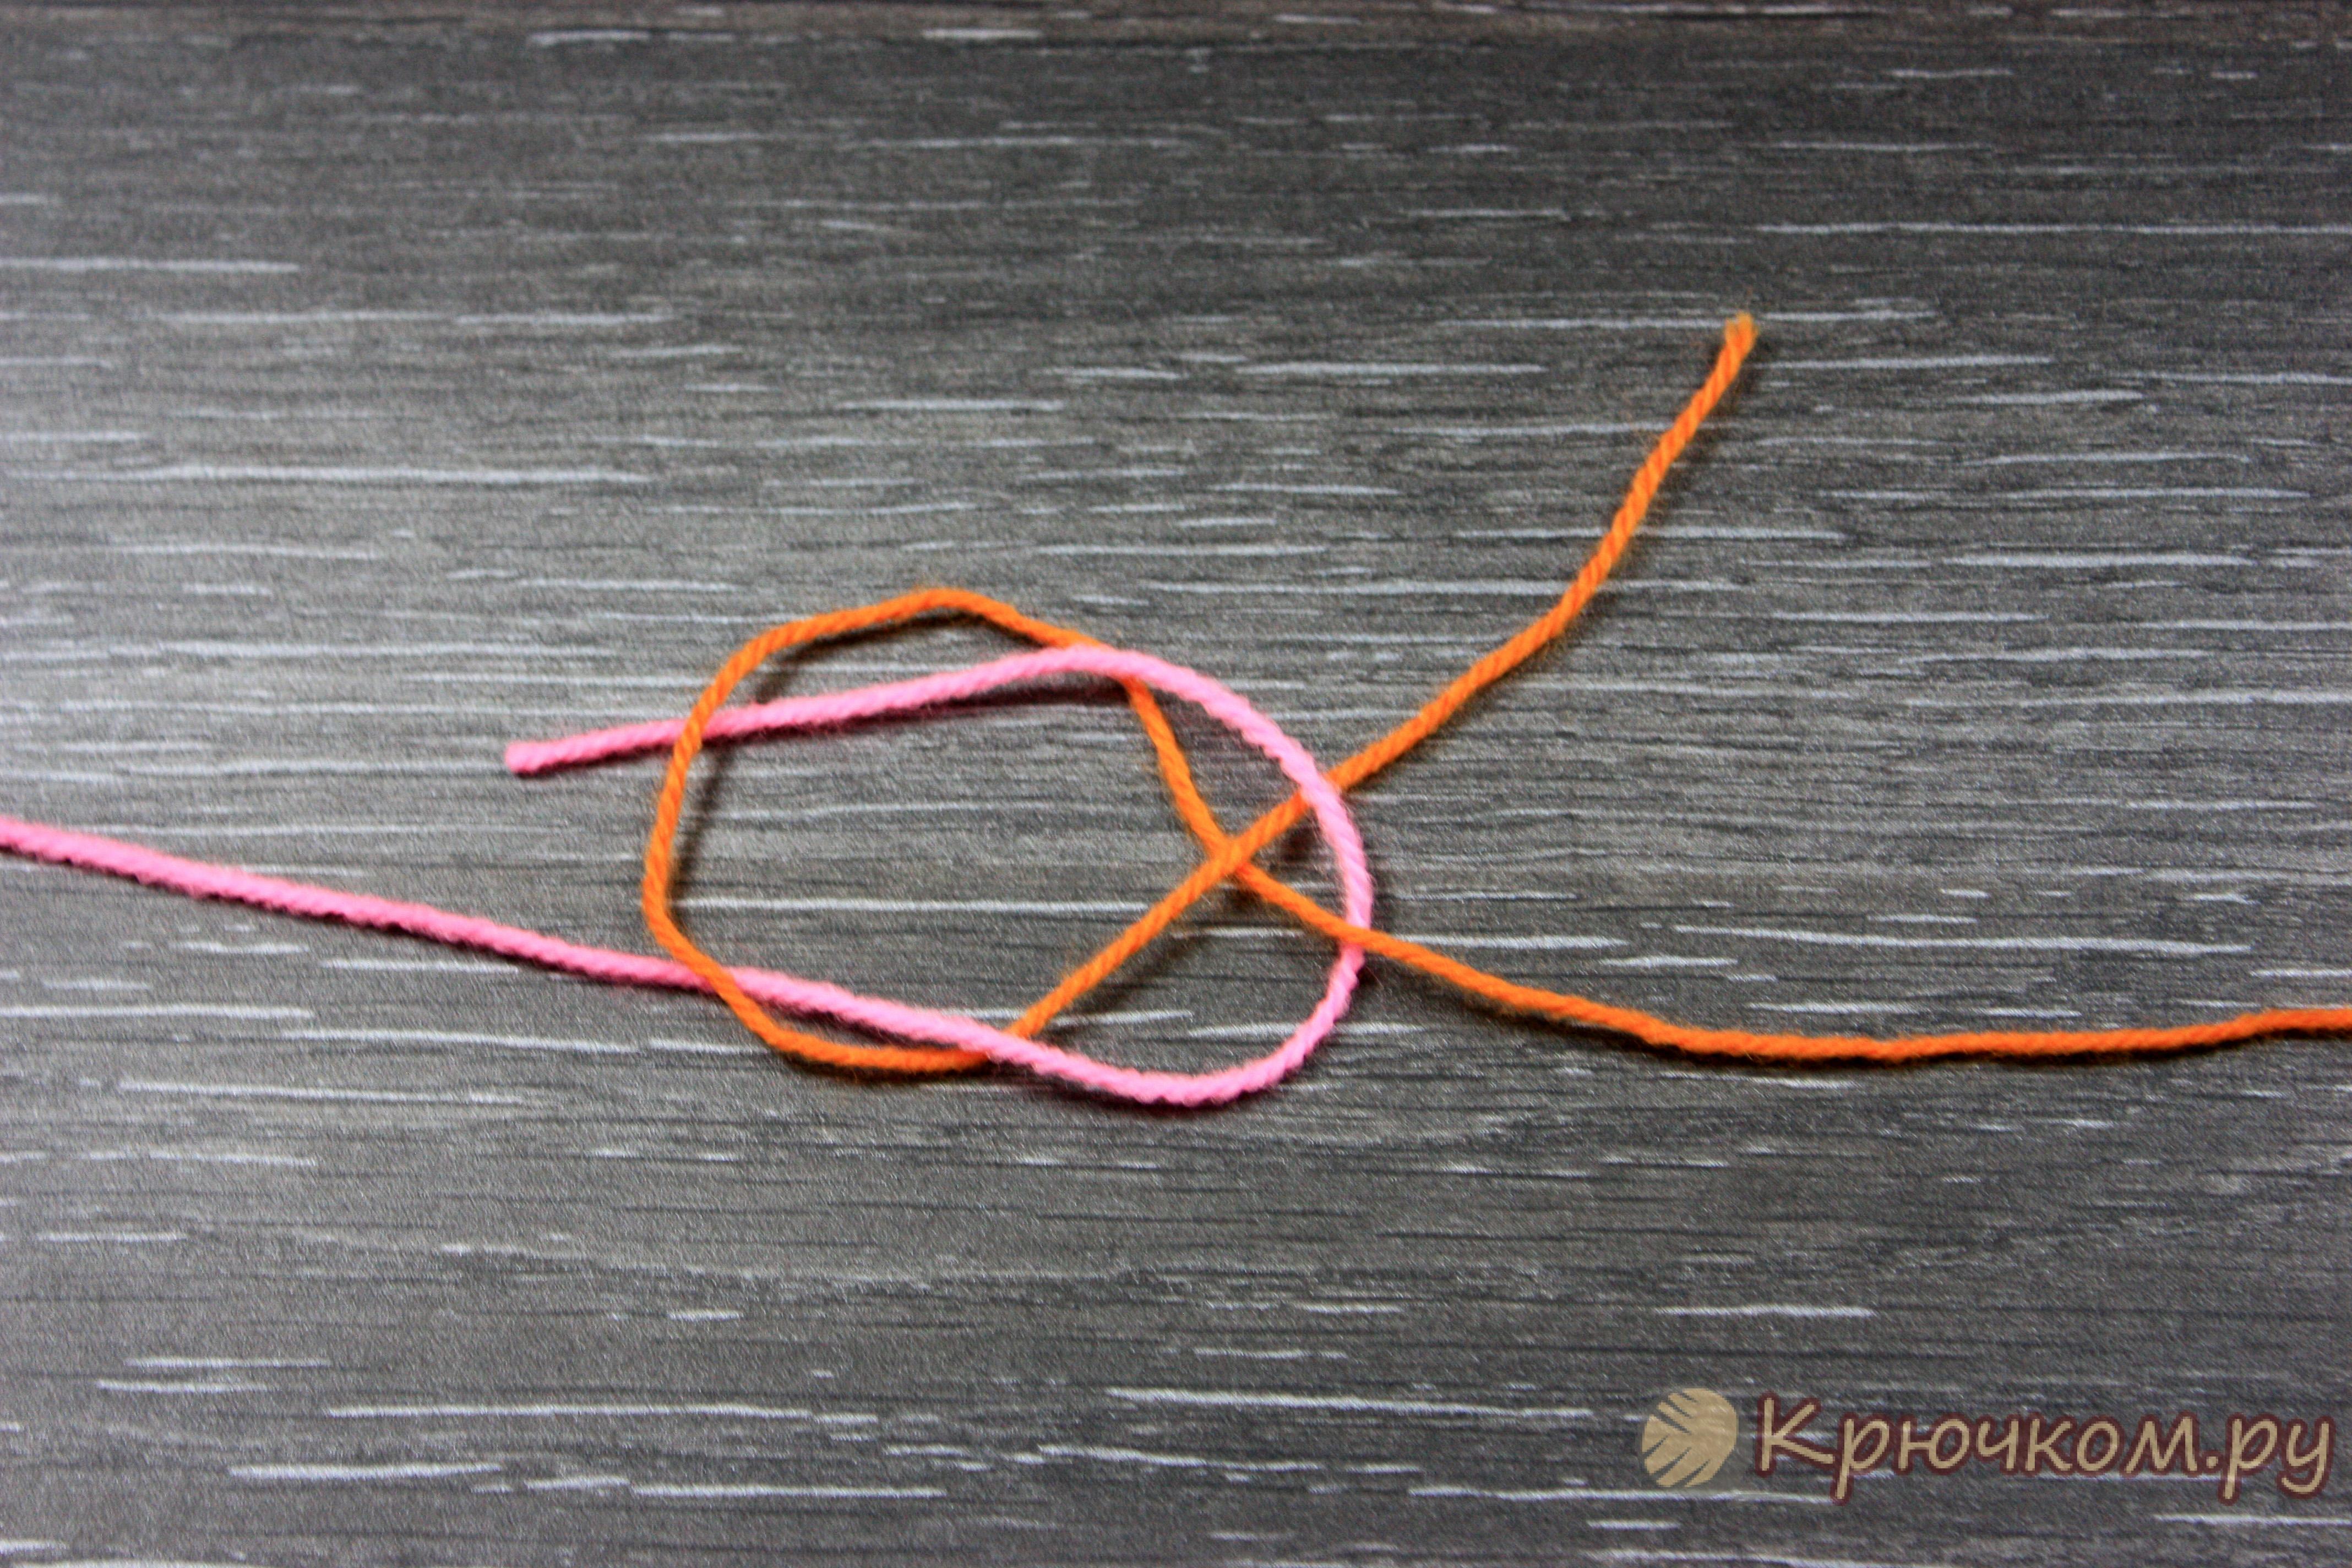 Соединение нитками 6. Узел для соединения двух нитей. Соединить нитки в вязании. Ткацкий узел соединения нитей. Соединить шерстяные нити.